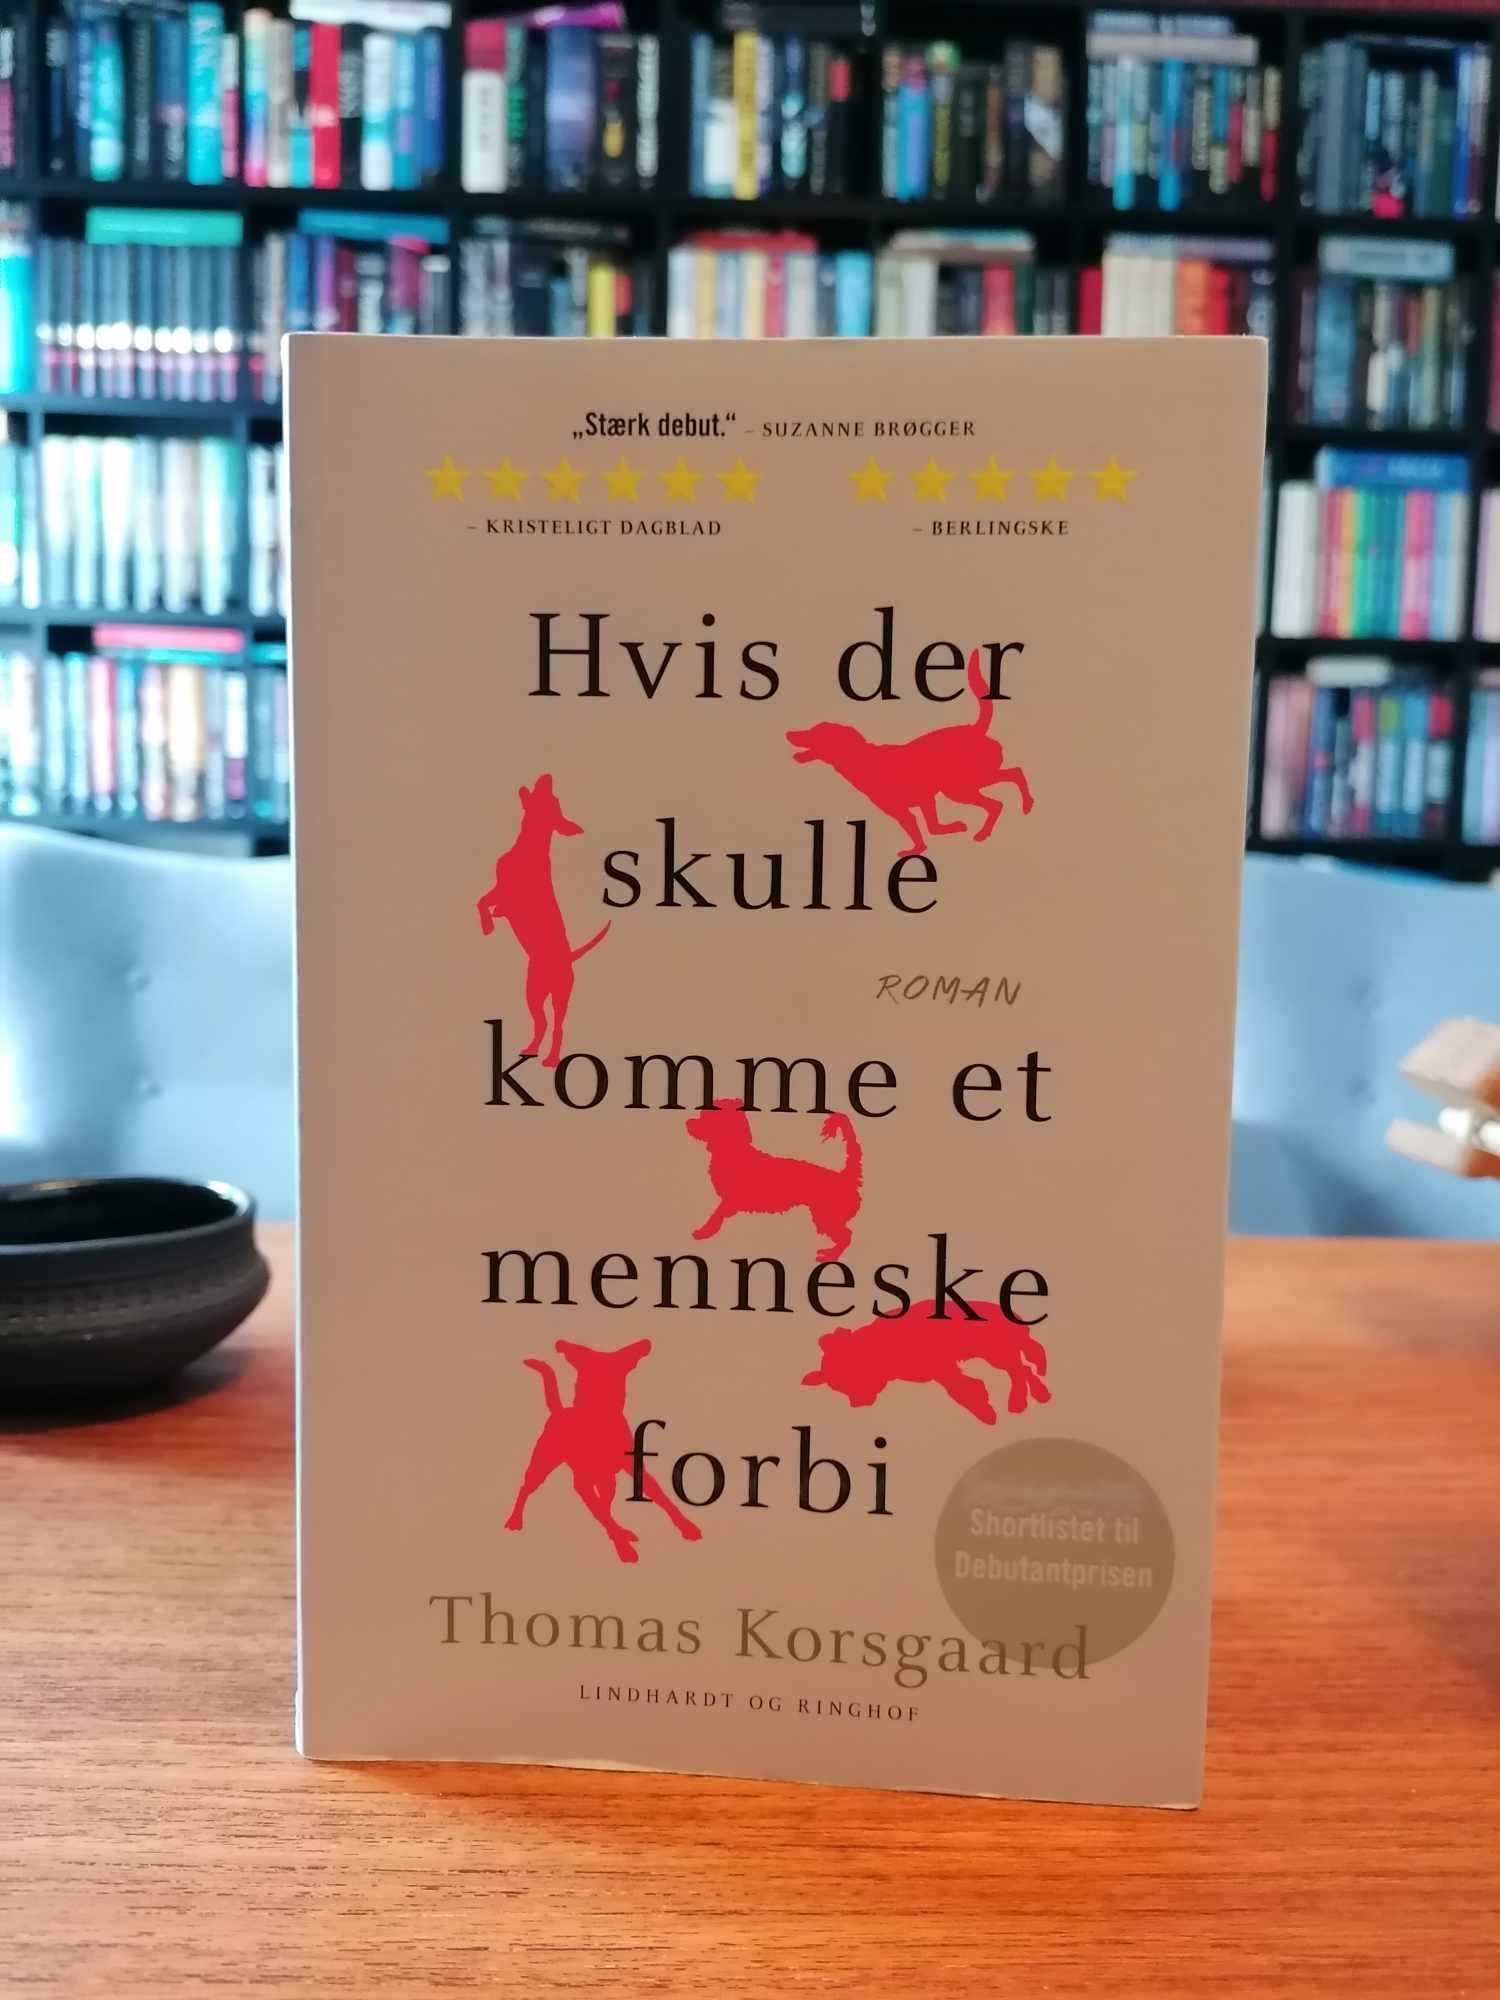 "Hvis der skulle komme et menneske forbi" af Thomas Korsgaard